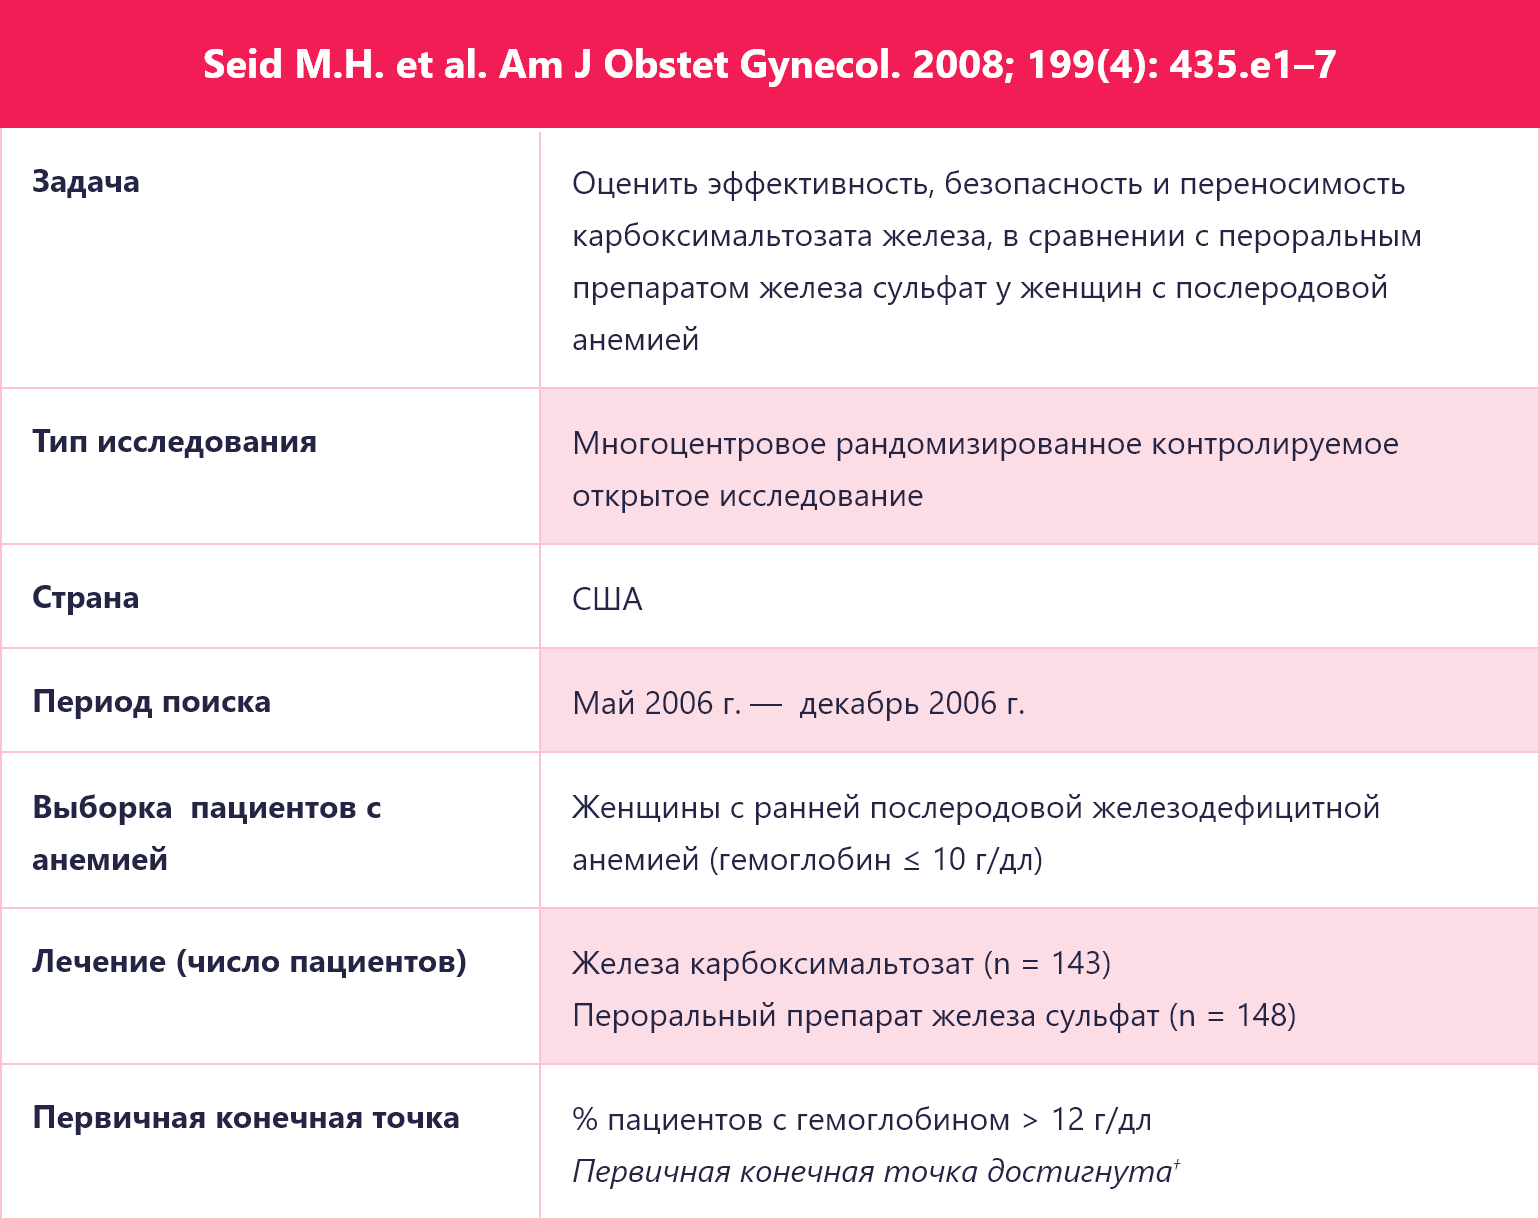 Seid M.H. et al. Am J Obstet Gynecol. 2008; 199(4): 435.e1–7